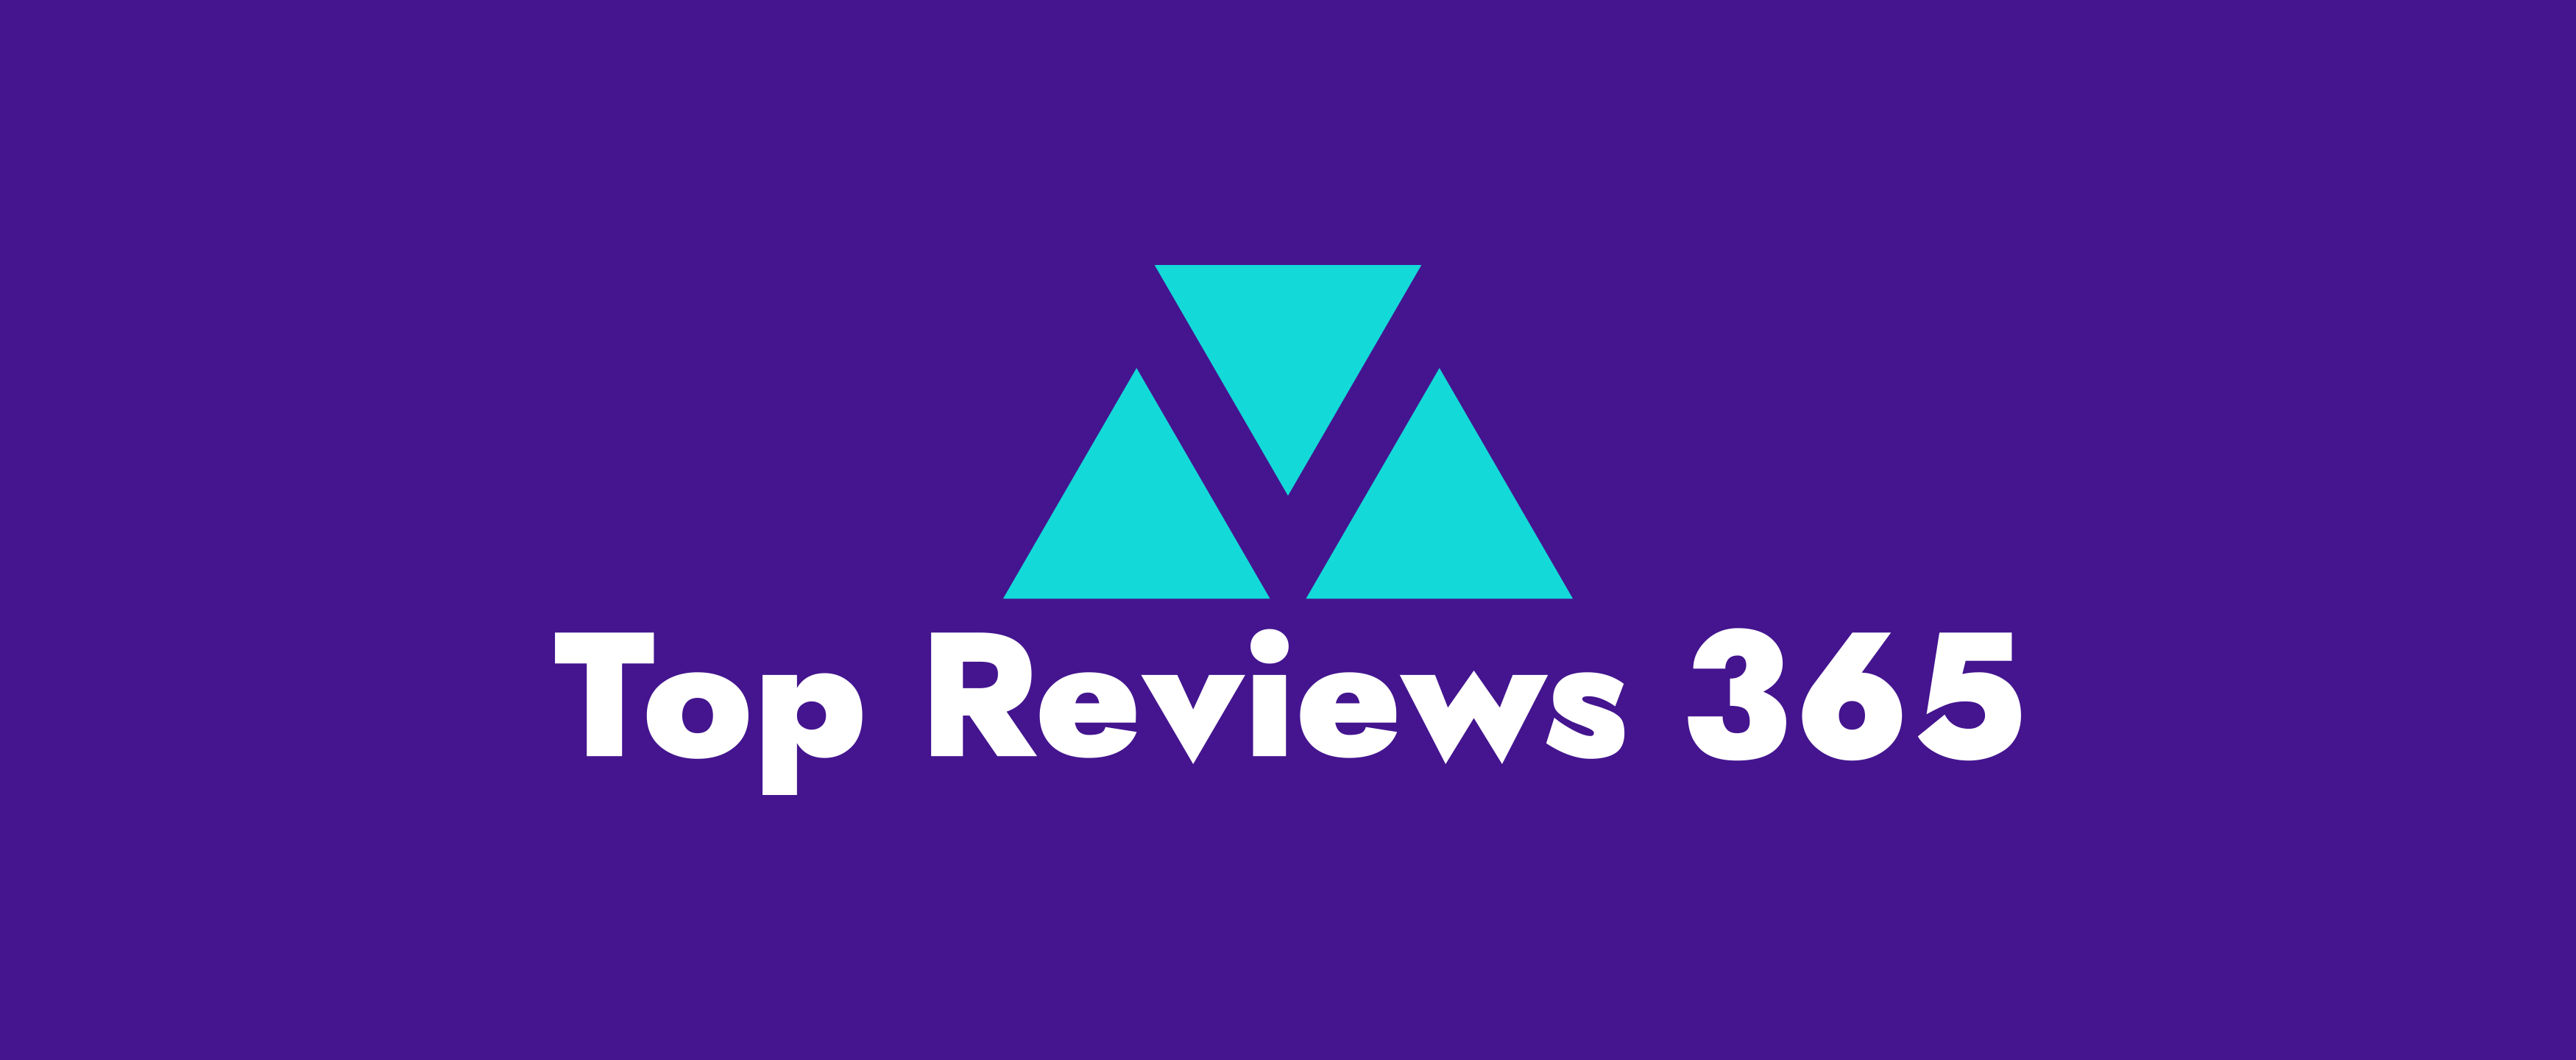 Top Reviews 365